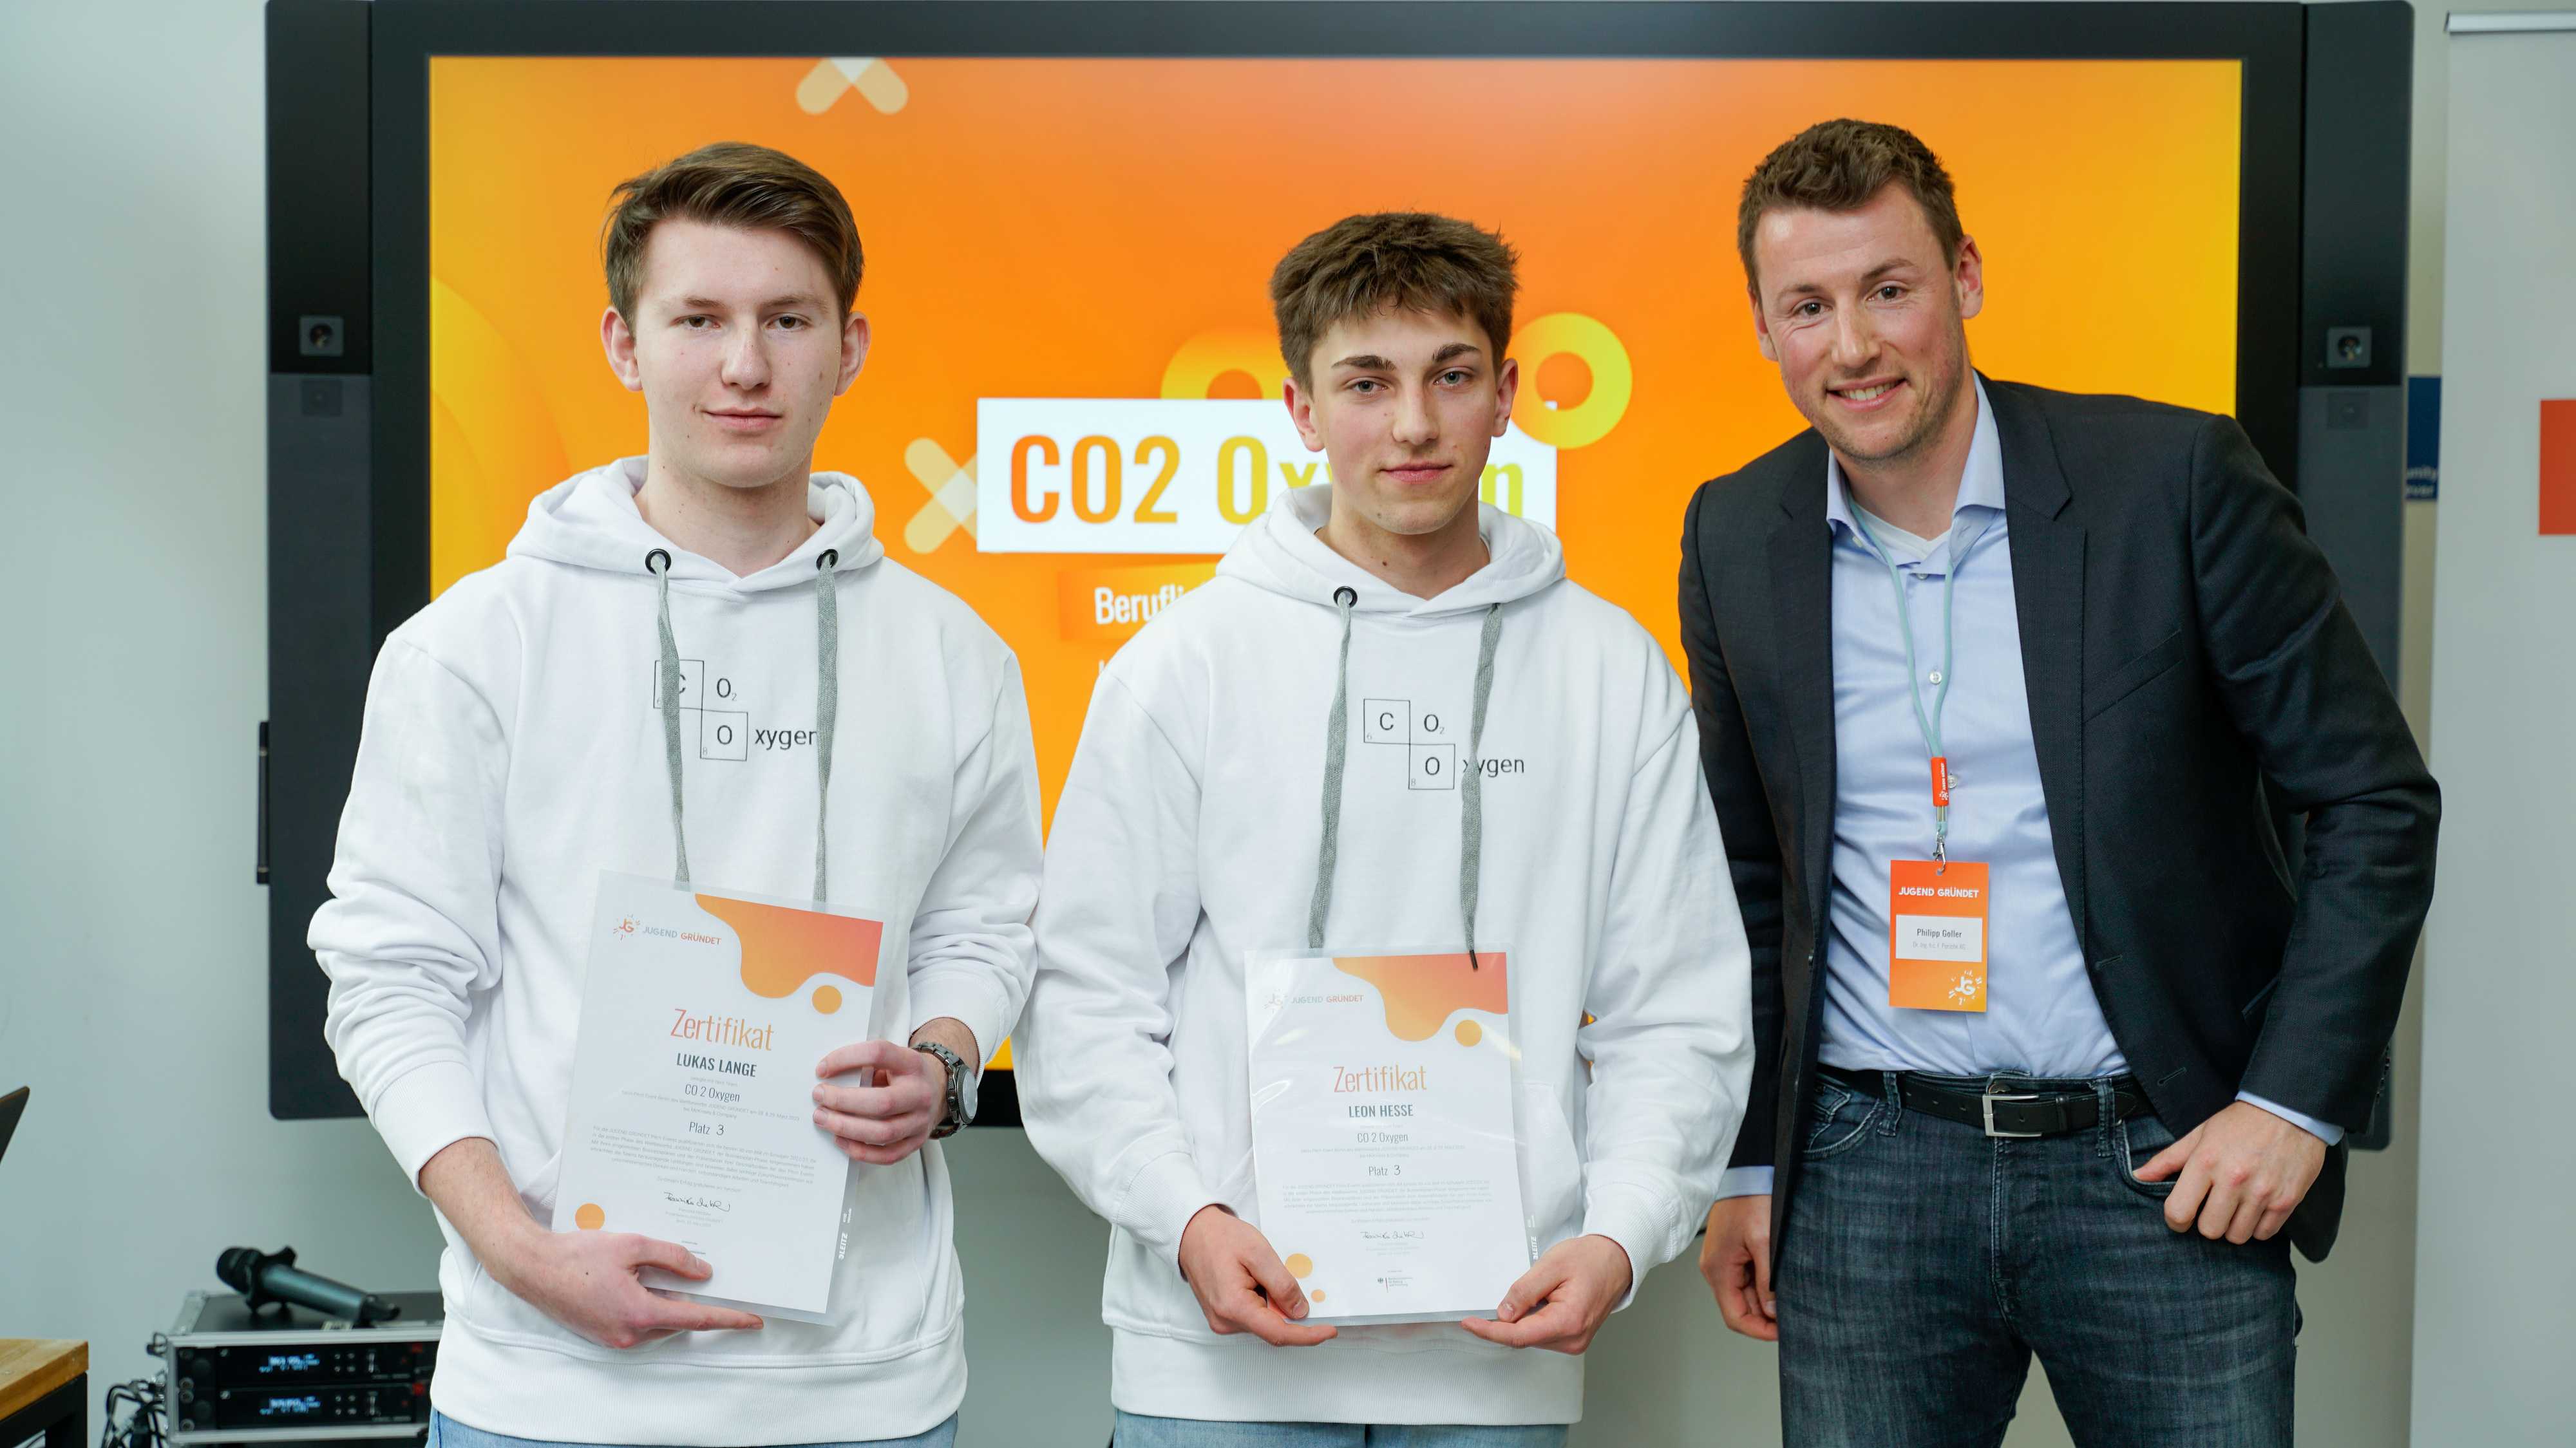 Platz 3 für "CO2 Oxygen" mit Lukas Lange (links) und Leon Hesse (rechts) von den Beruflichen Schulen in Bebra, hier mit Jurymitglied Philipp Goller (Porsche AG)